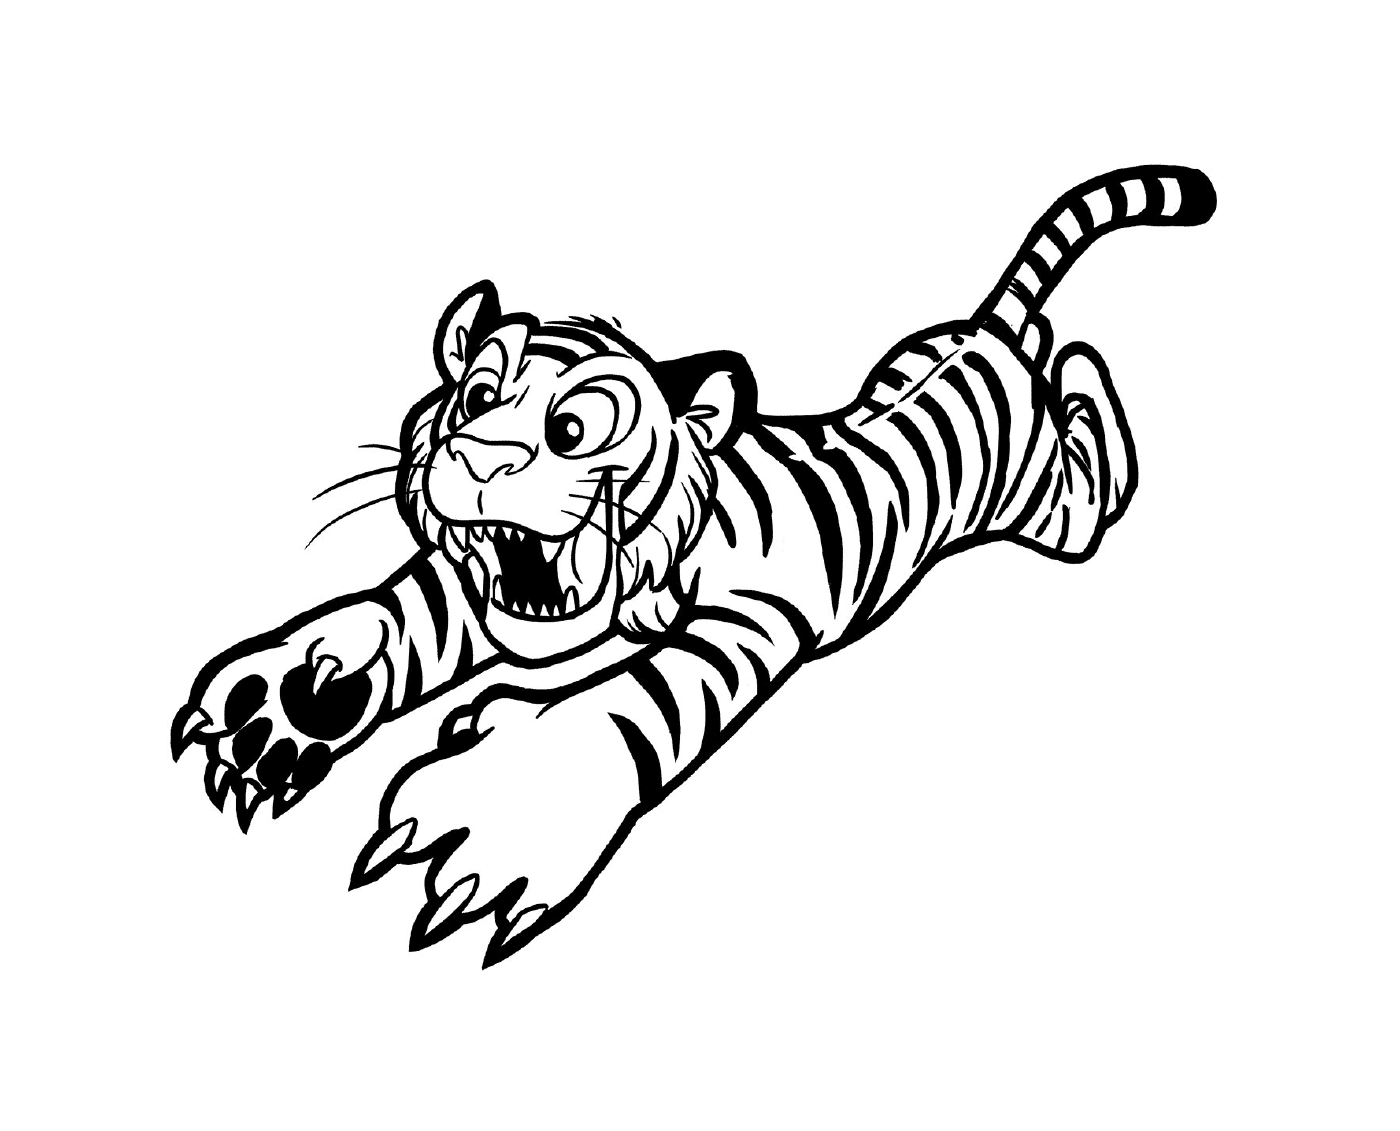  एक बाघ कार्यवाही में 